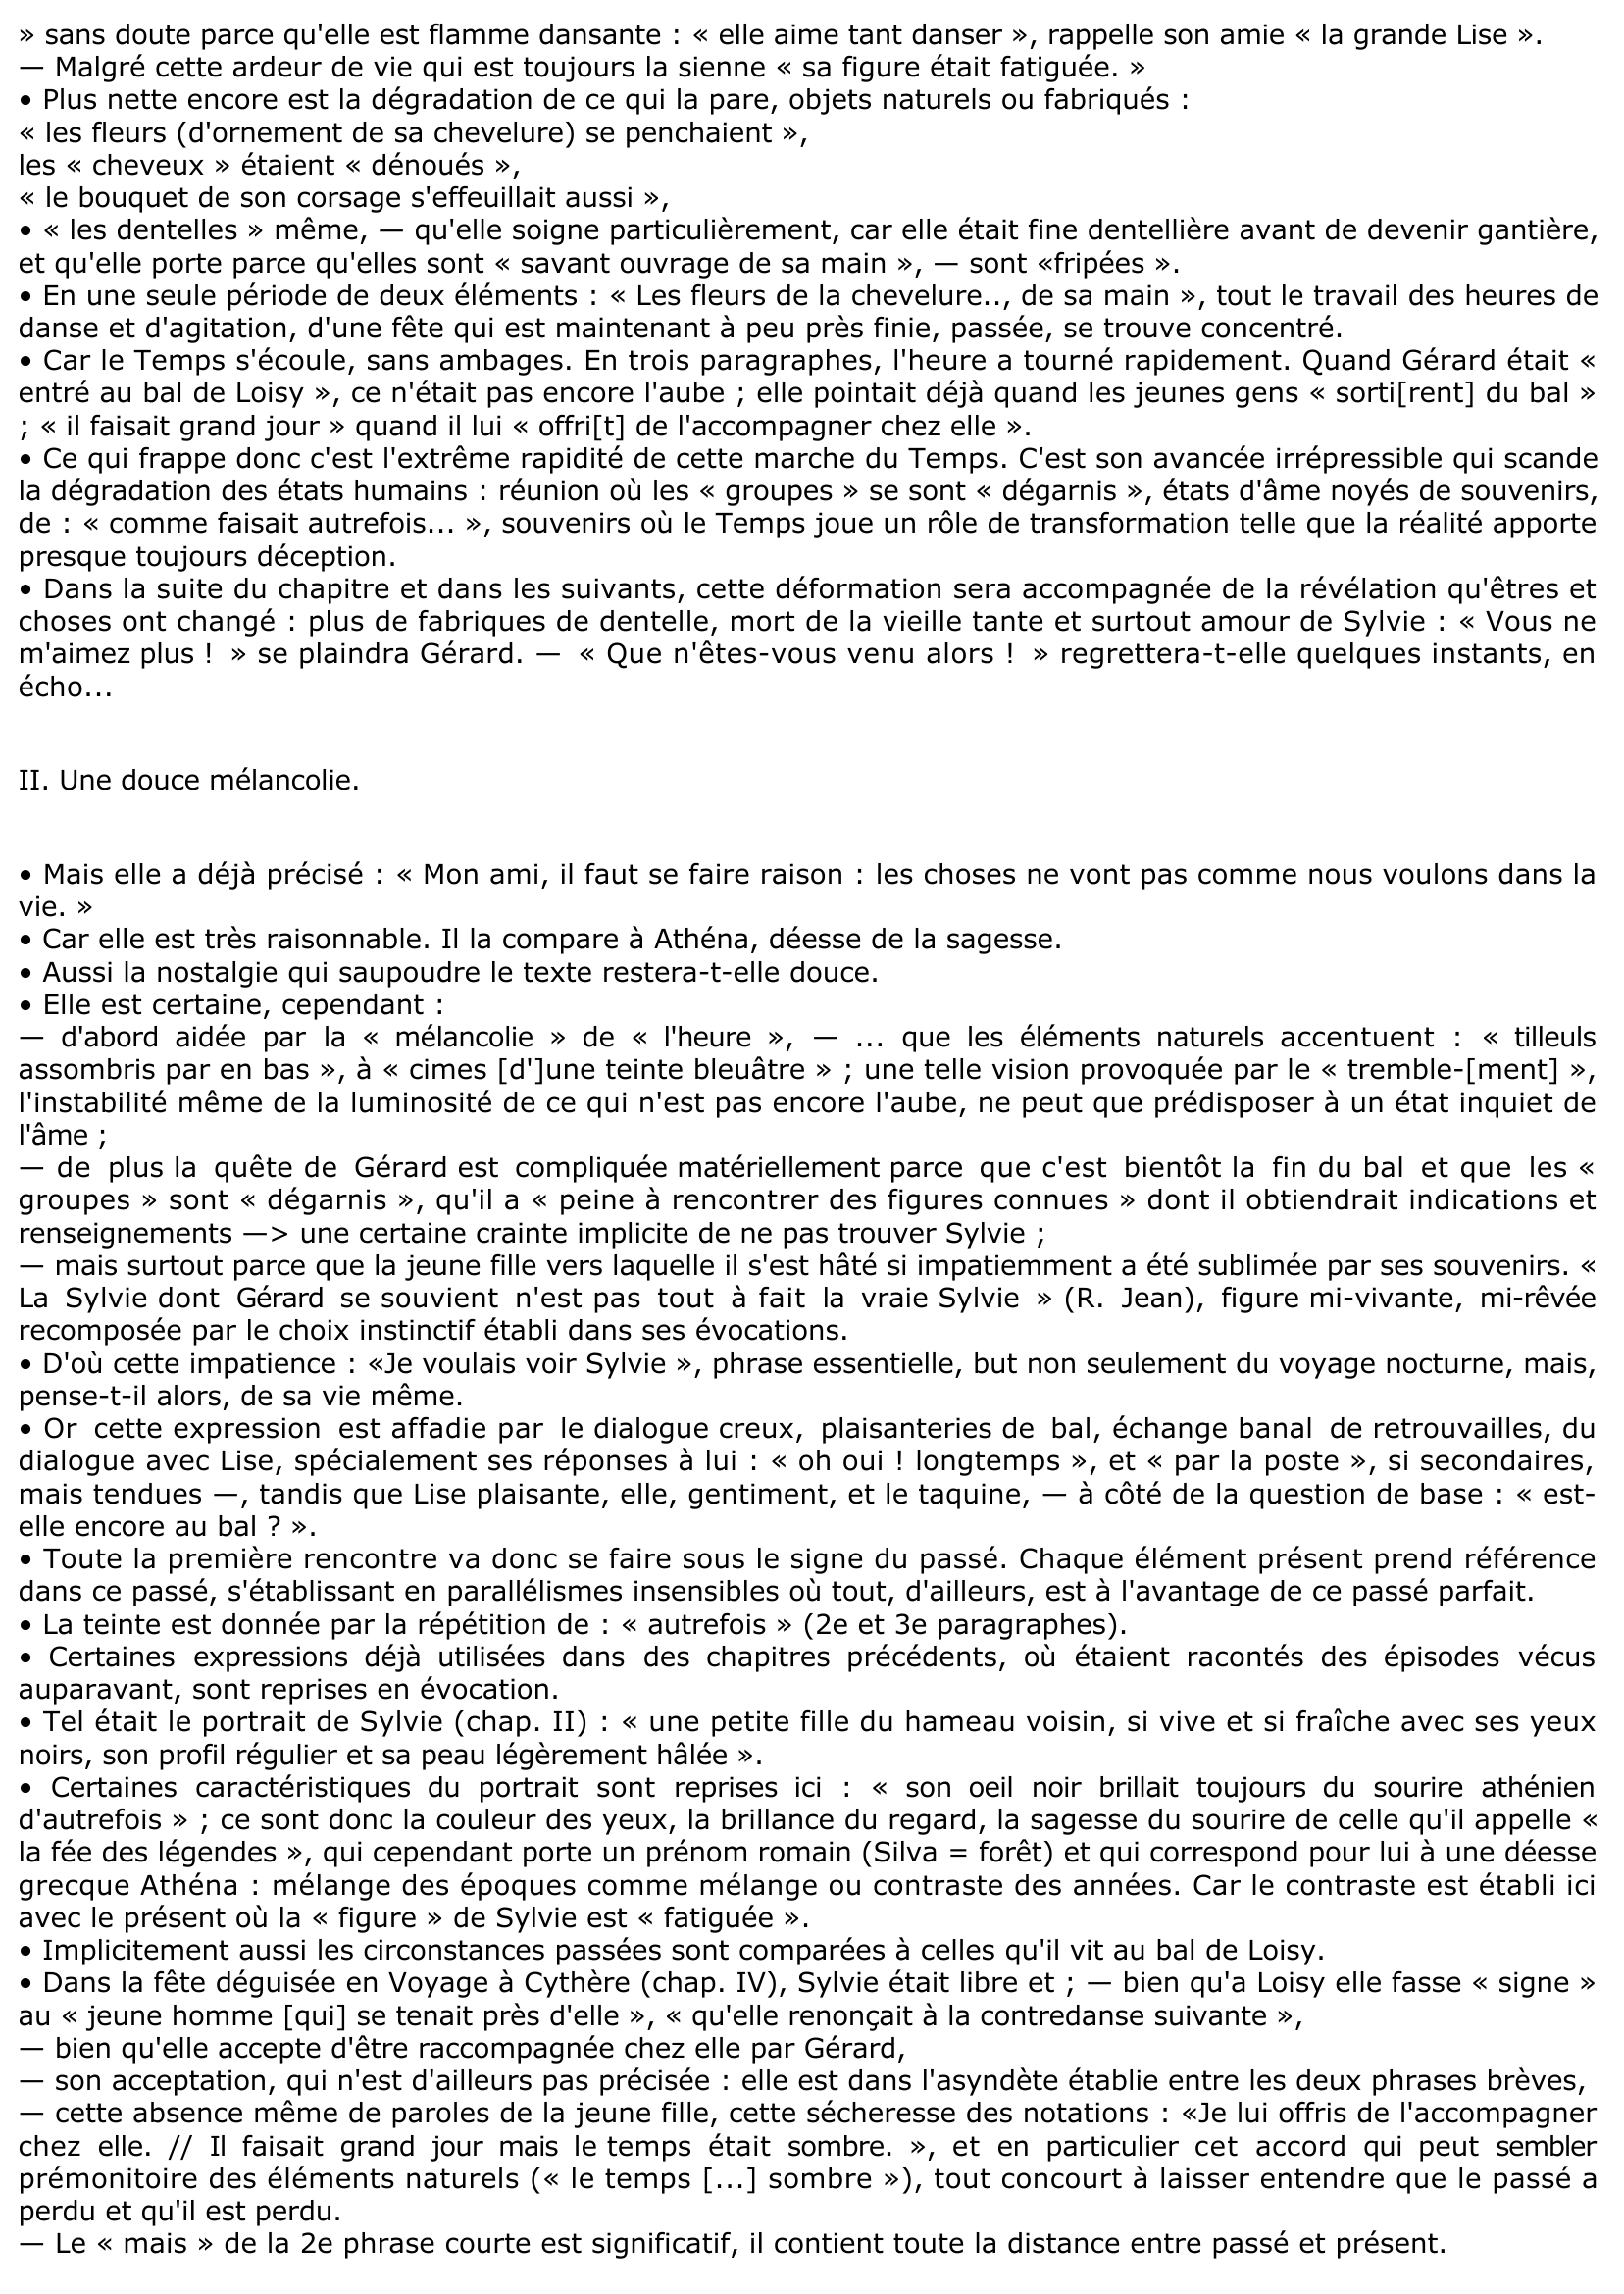 Prévisualisation du document Gérard de NERVAL, Sylvie, chap. VIII.